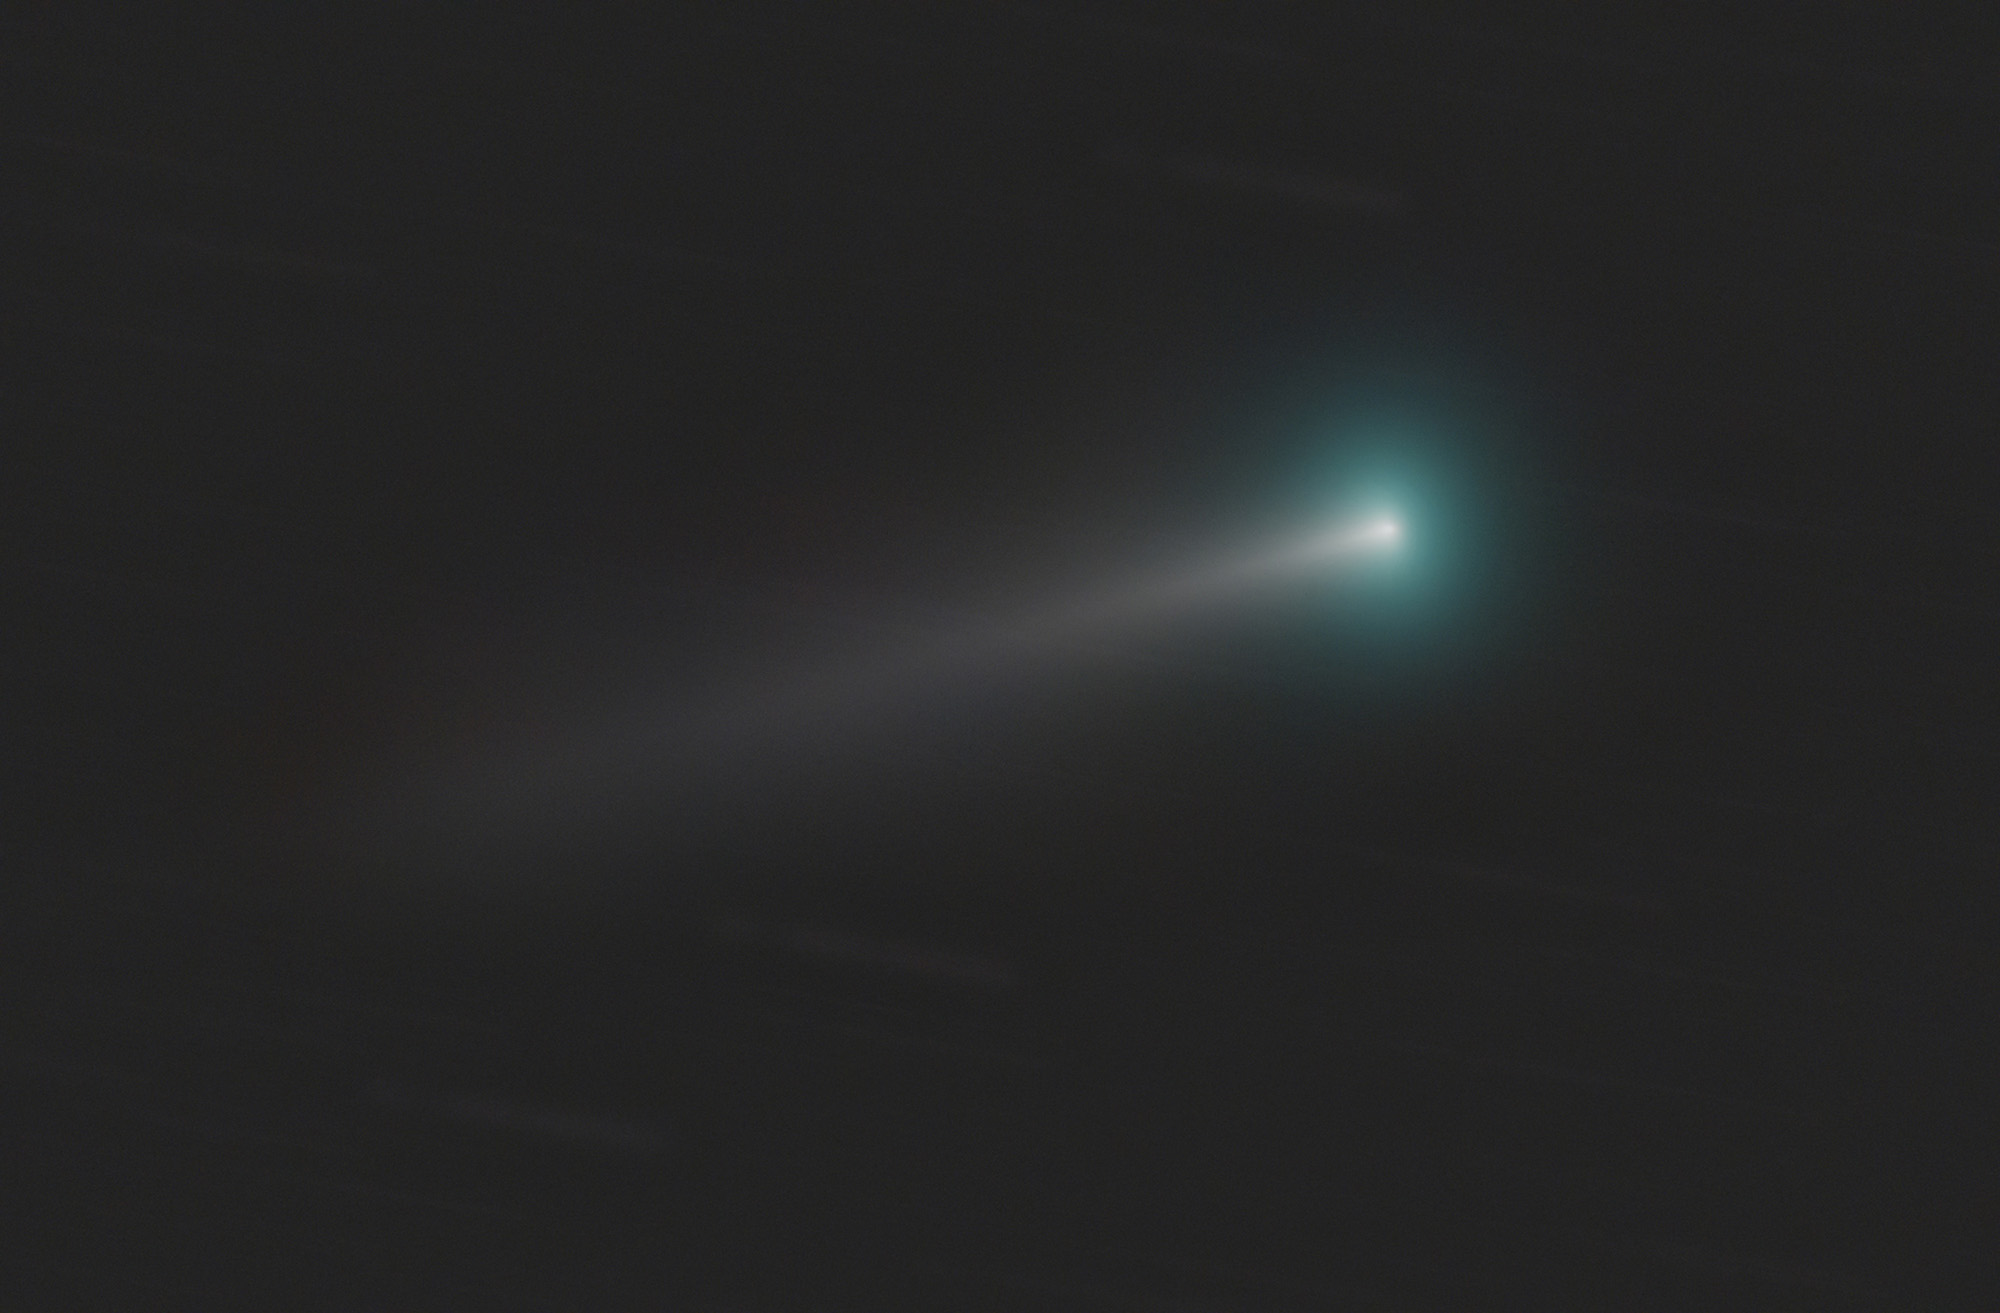 Szabó Péter: C/2021 A1 (Leonard)-üstökös felvétel csillagok nélkül feldolgozva